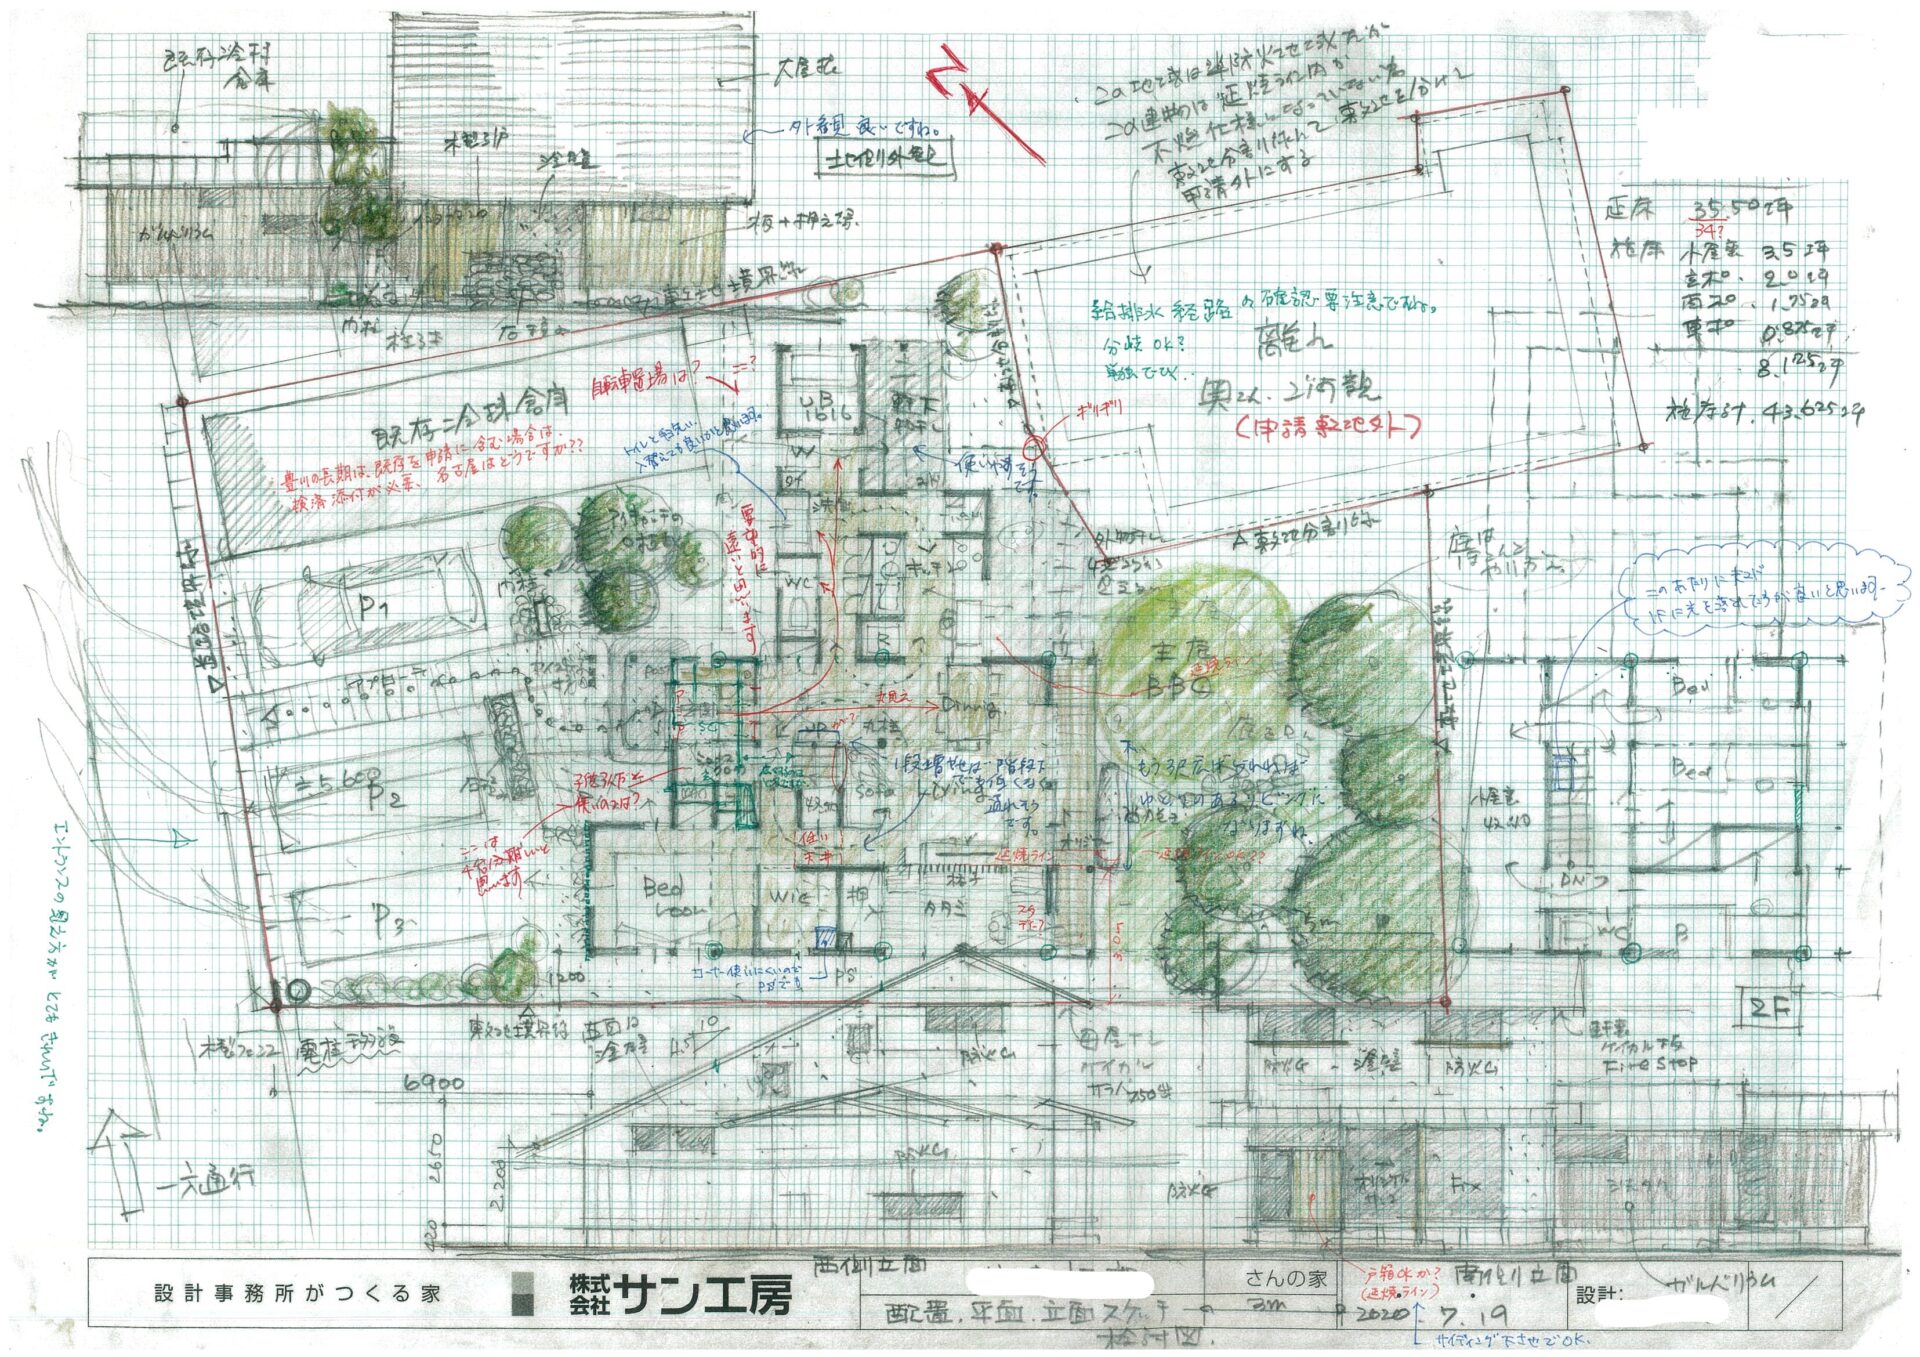 豊田市で和モダンな木の家/サン工房岡崎スタジオ